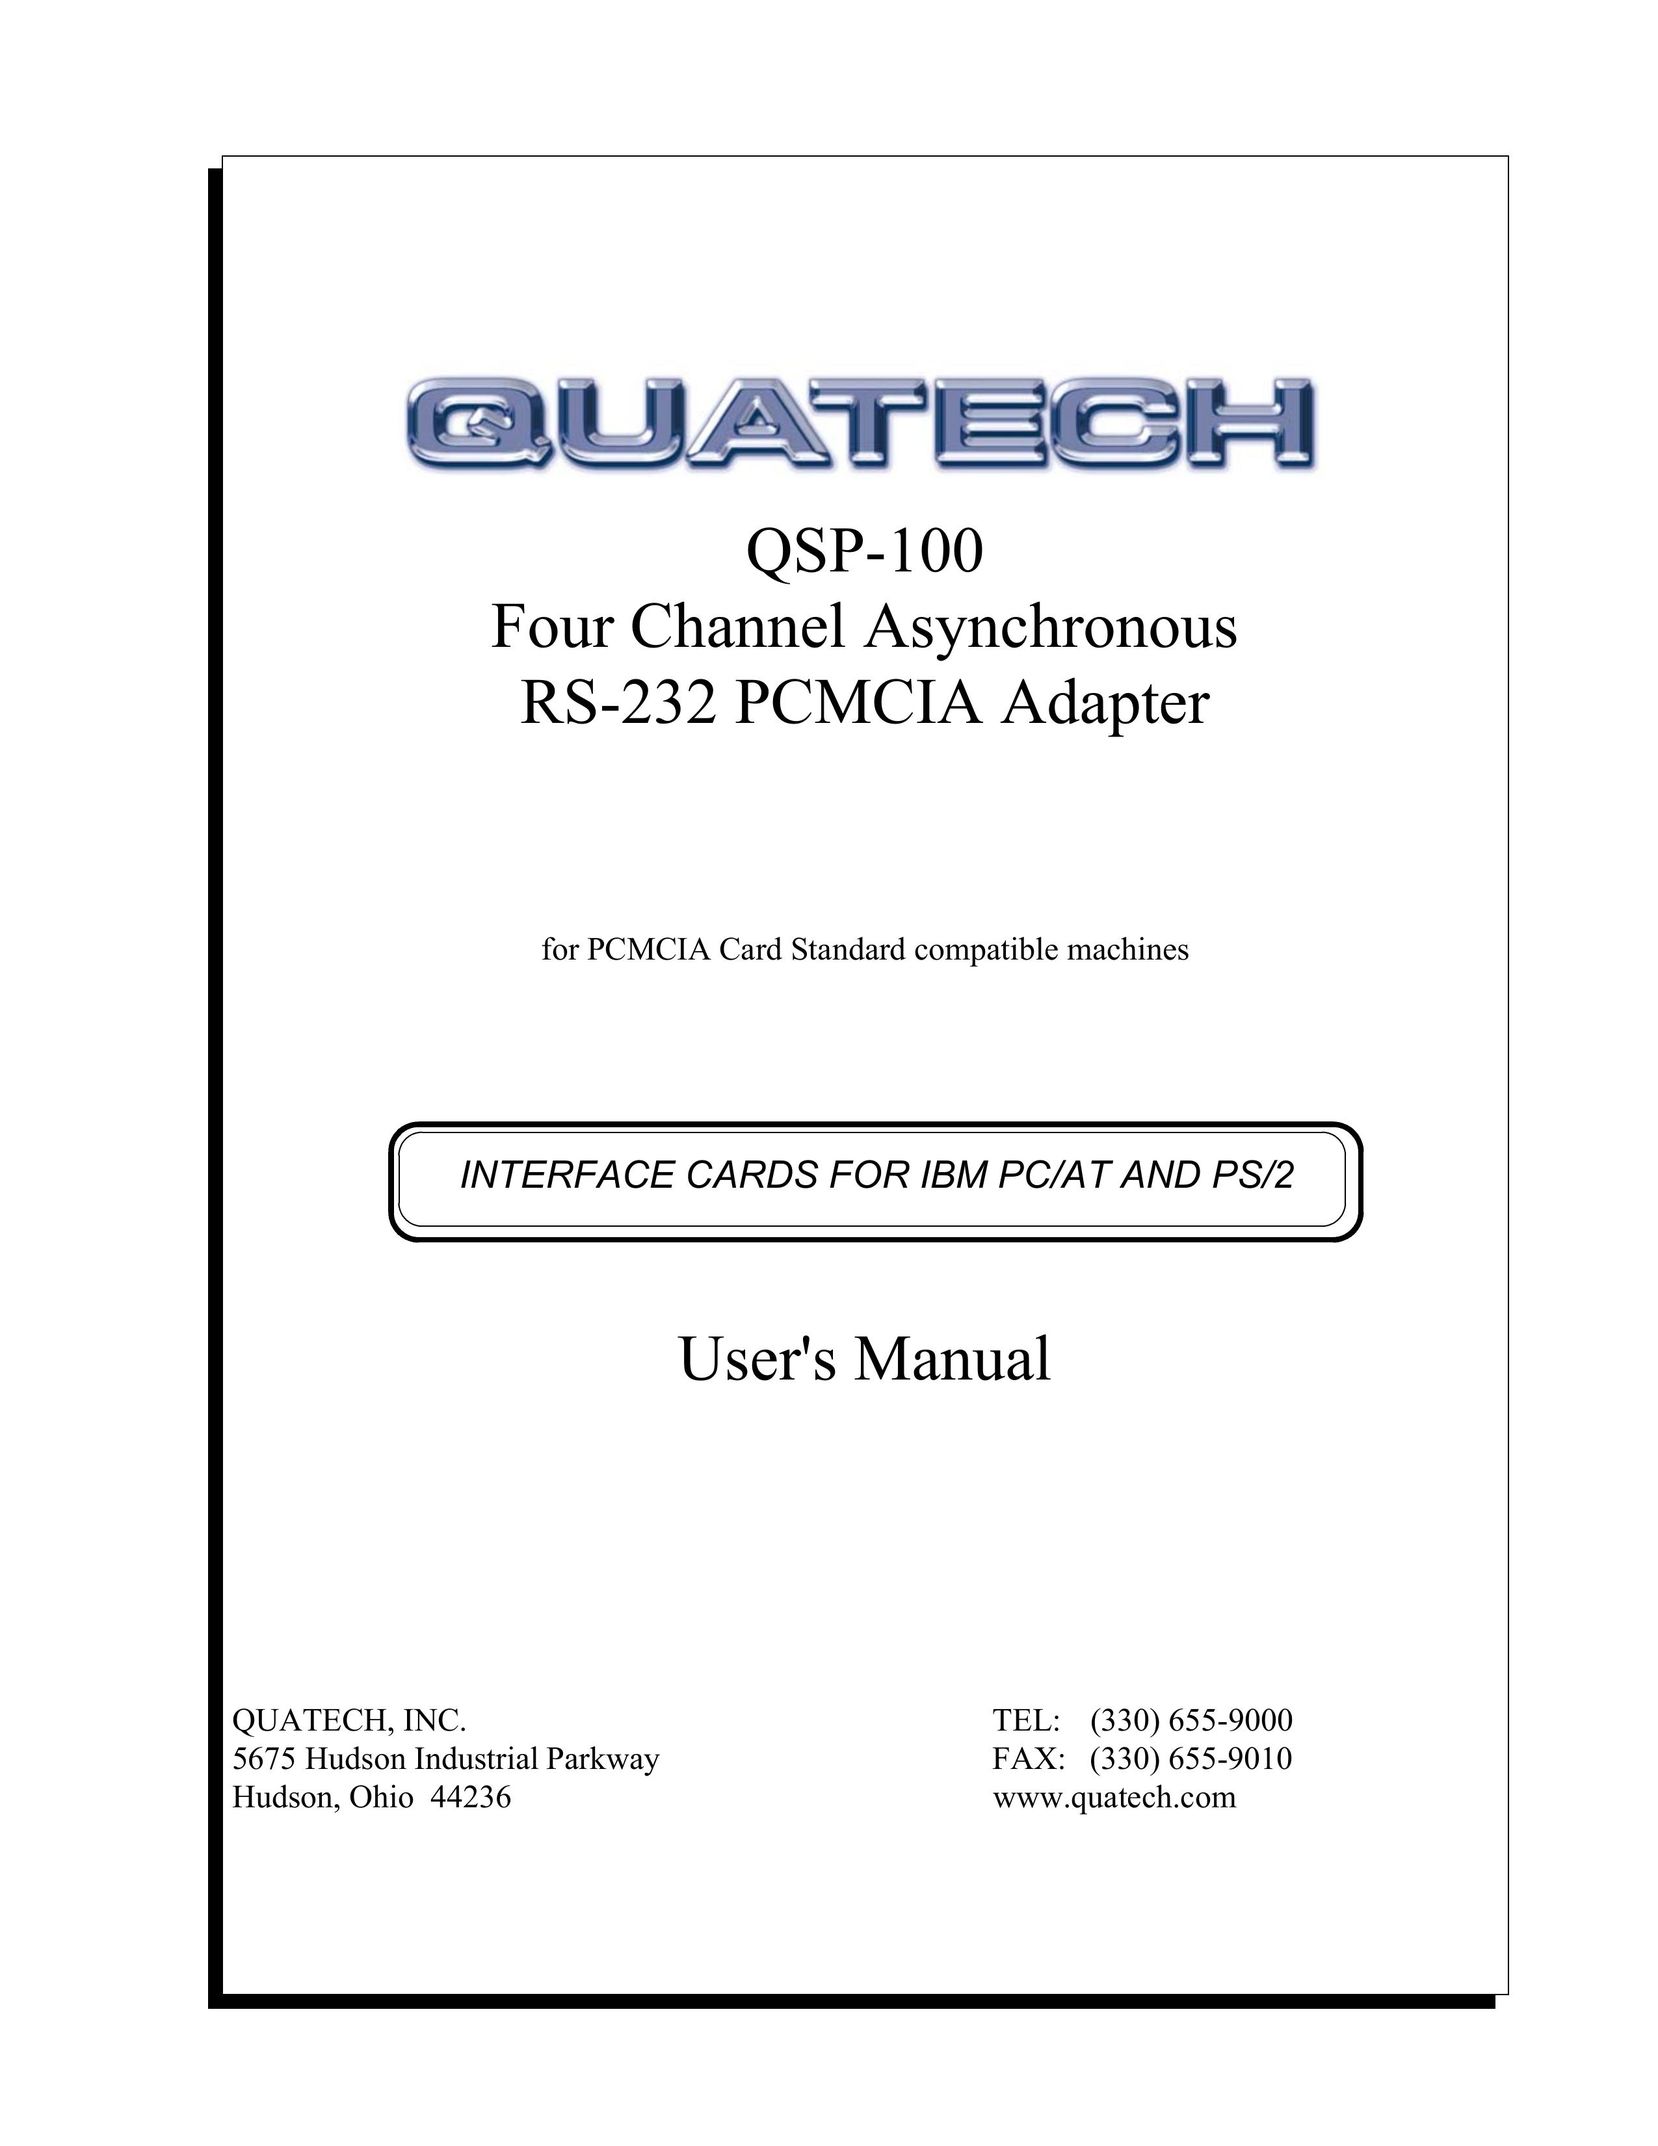 Quatech QSP-100 Network Card User Manual